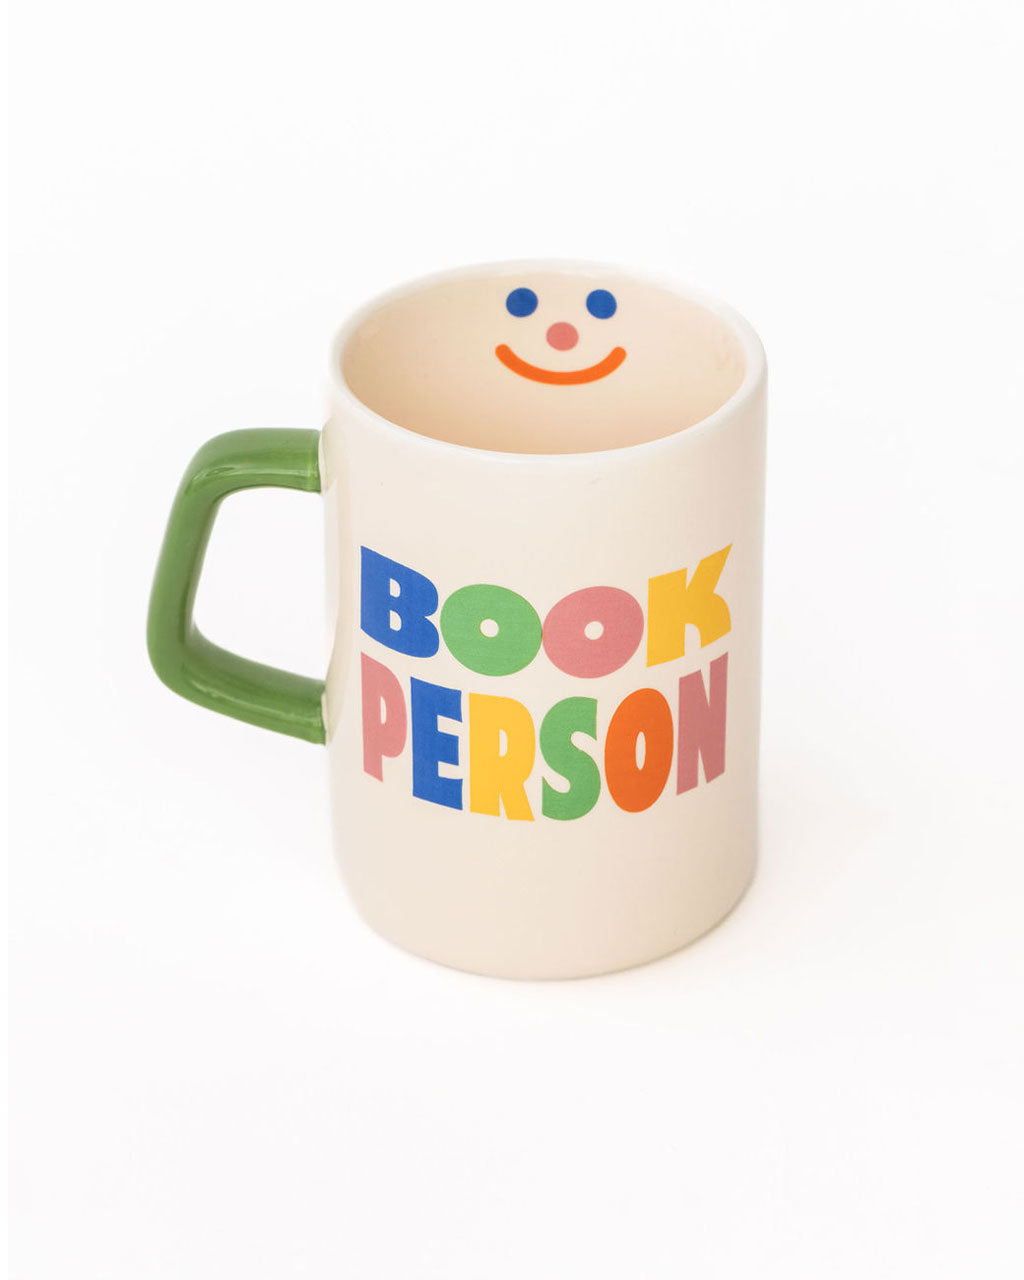 Hot Stuff Ceramic Mug - Book Person